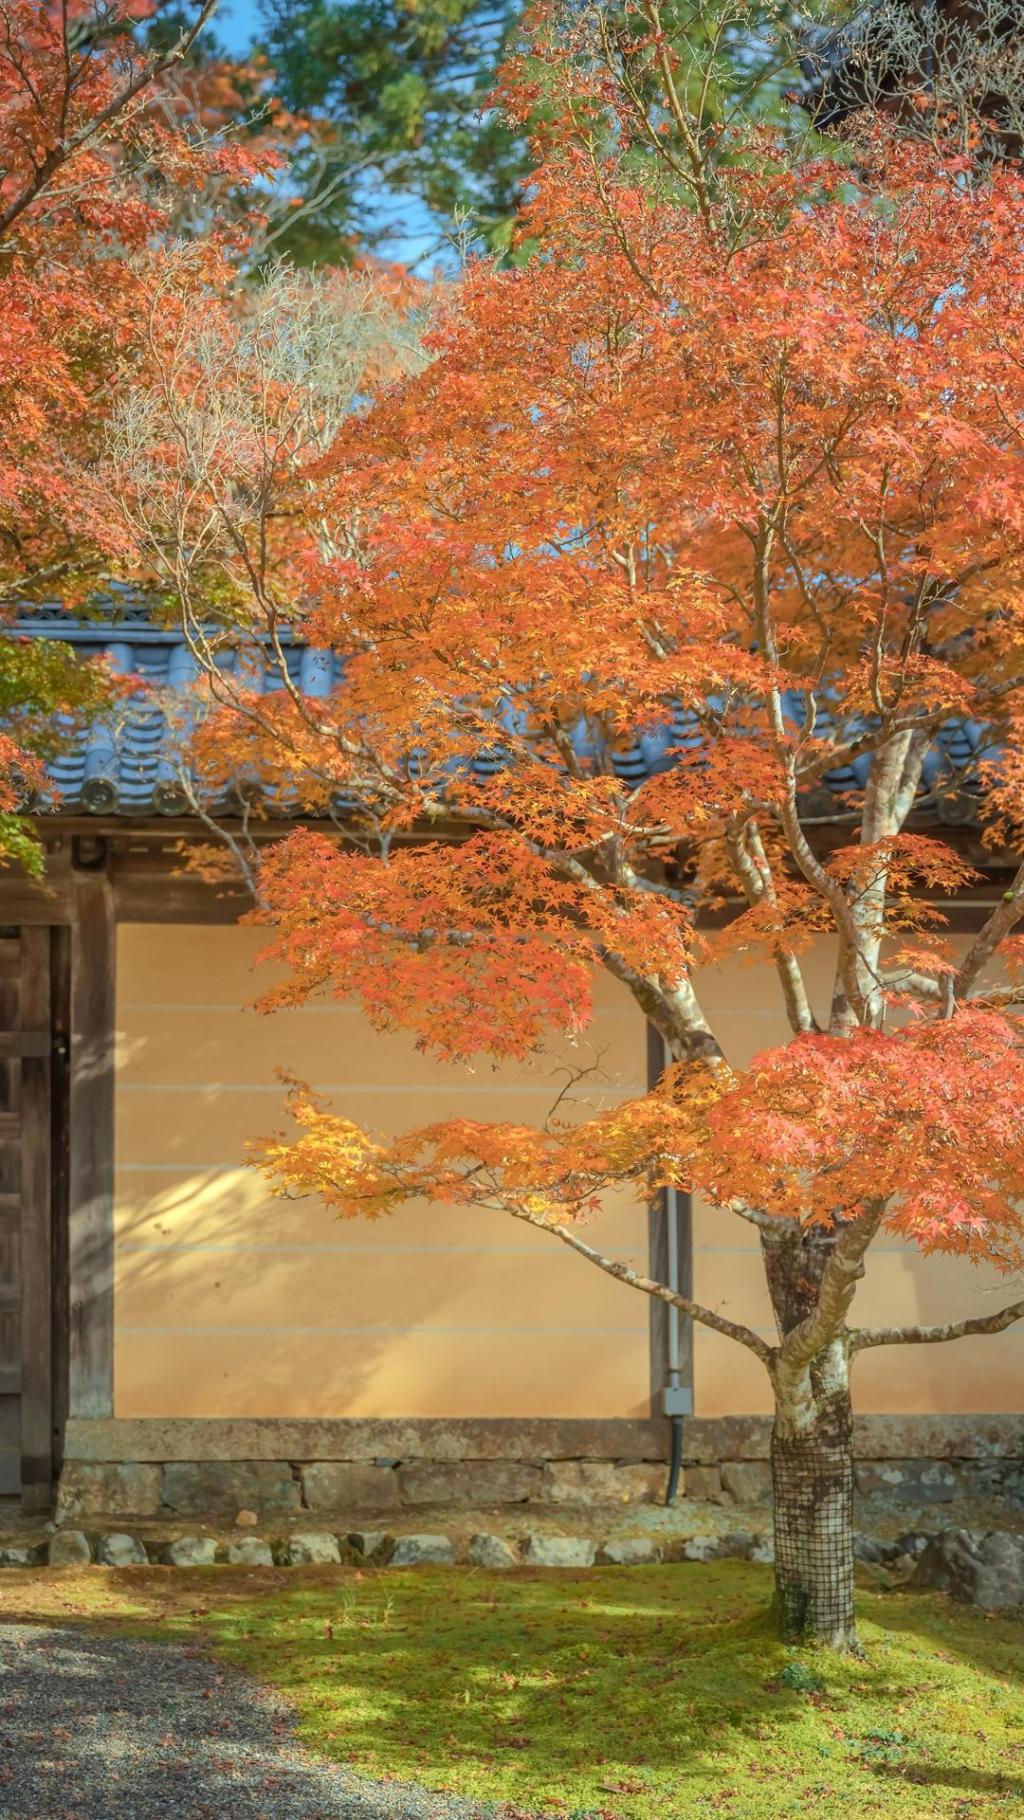 秋日庭院枫树意境迷人写真手机壁纸 手机壁纸 网页图库手机版